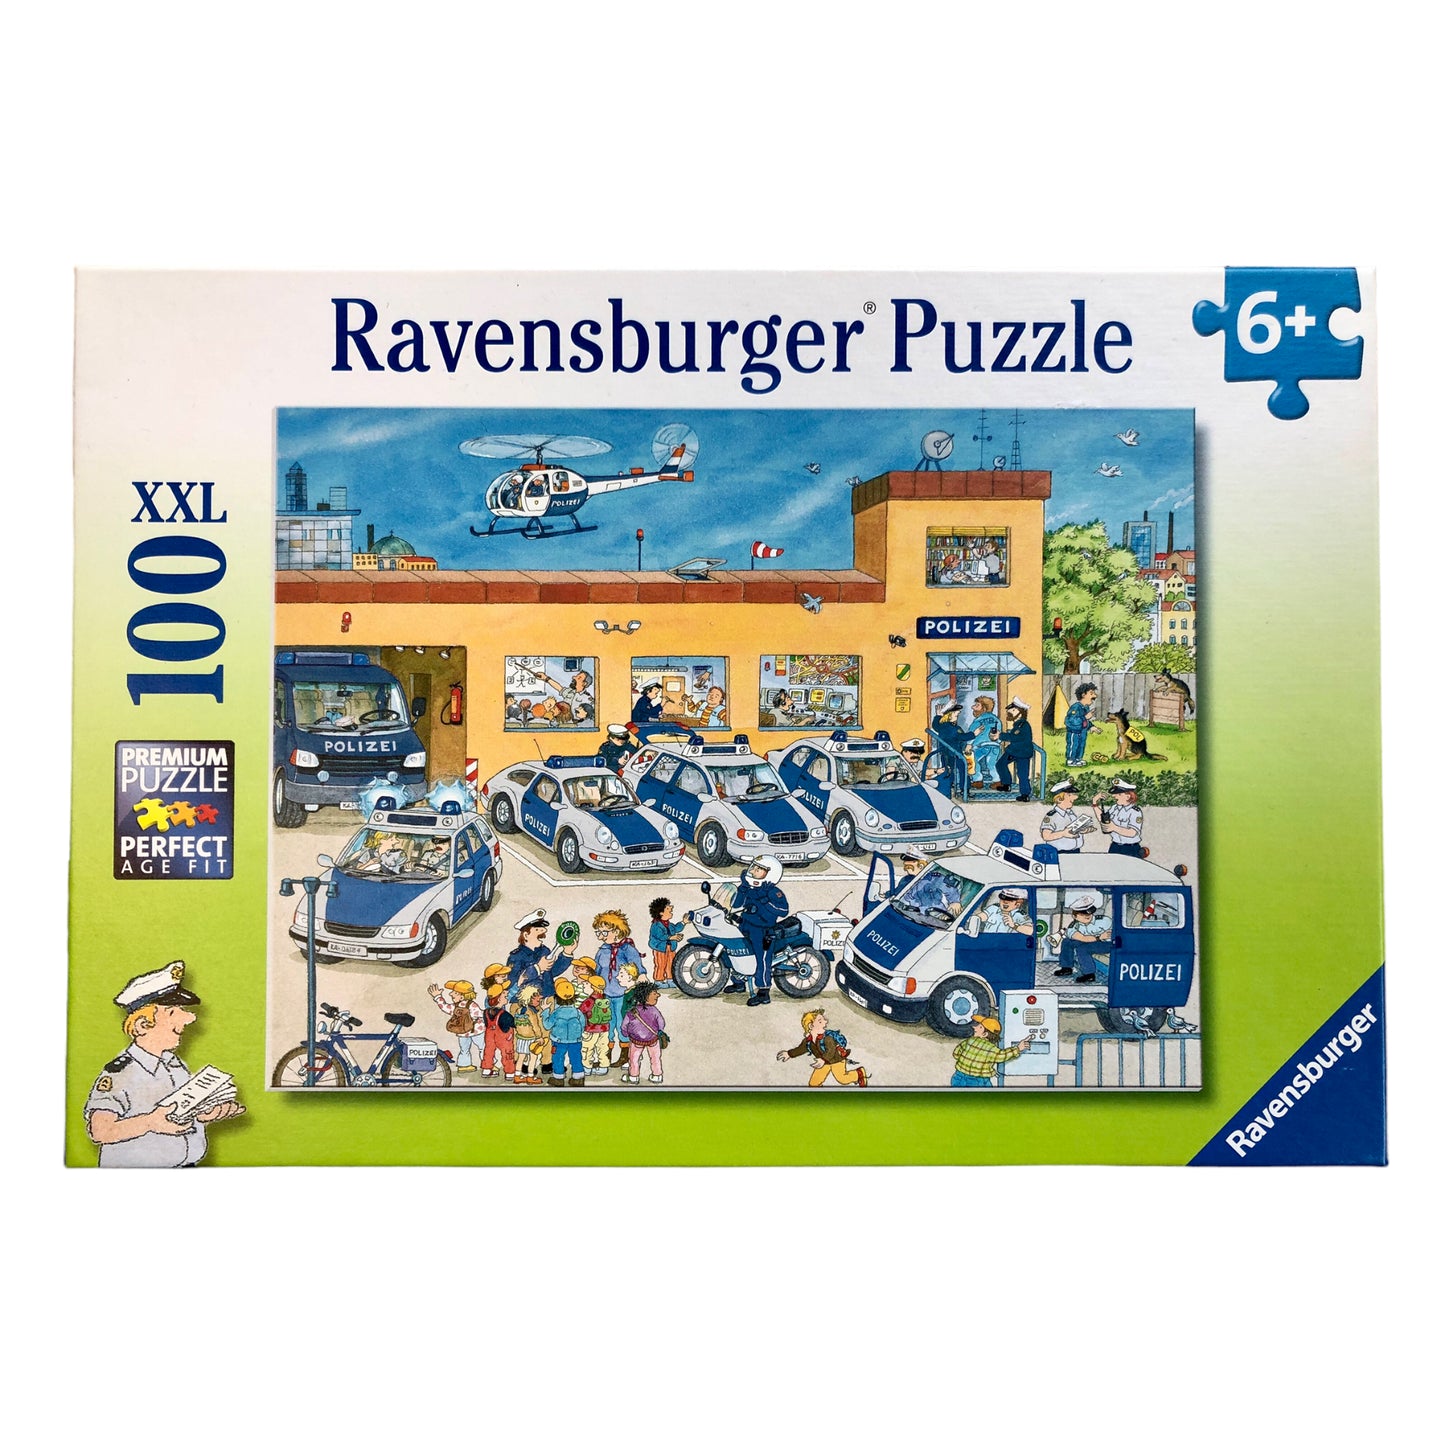 Ravensburger - Quartier de police, puzzle XXL 100 pièces